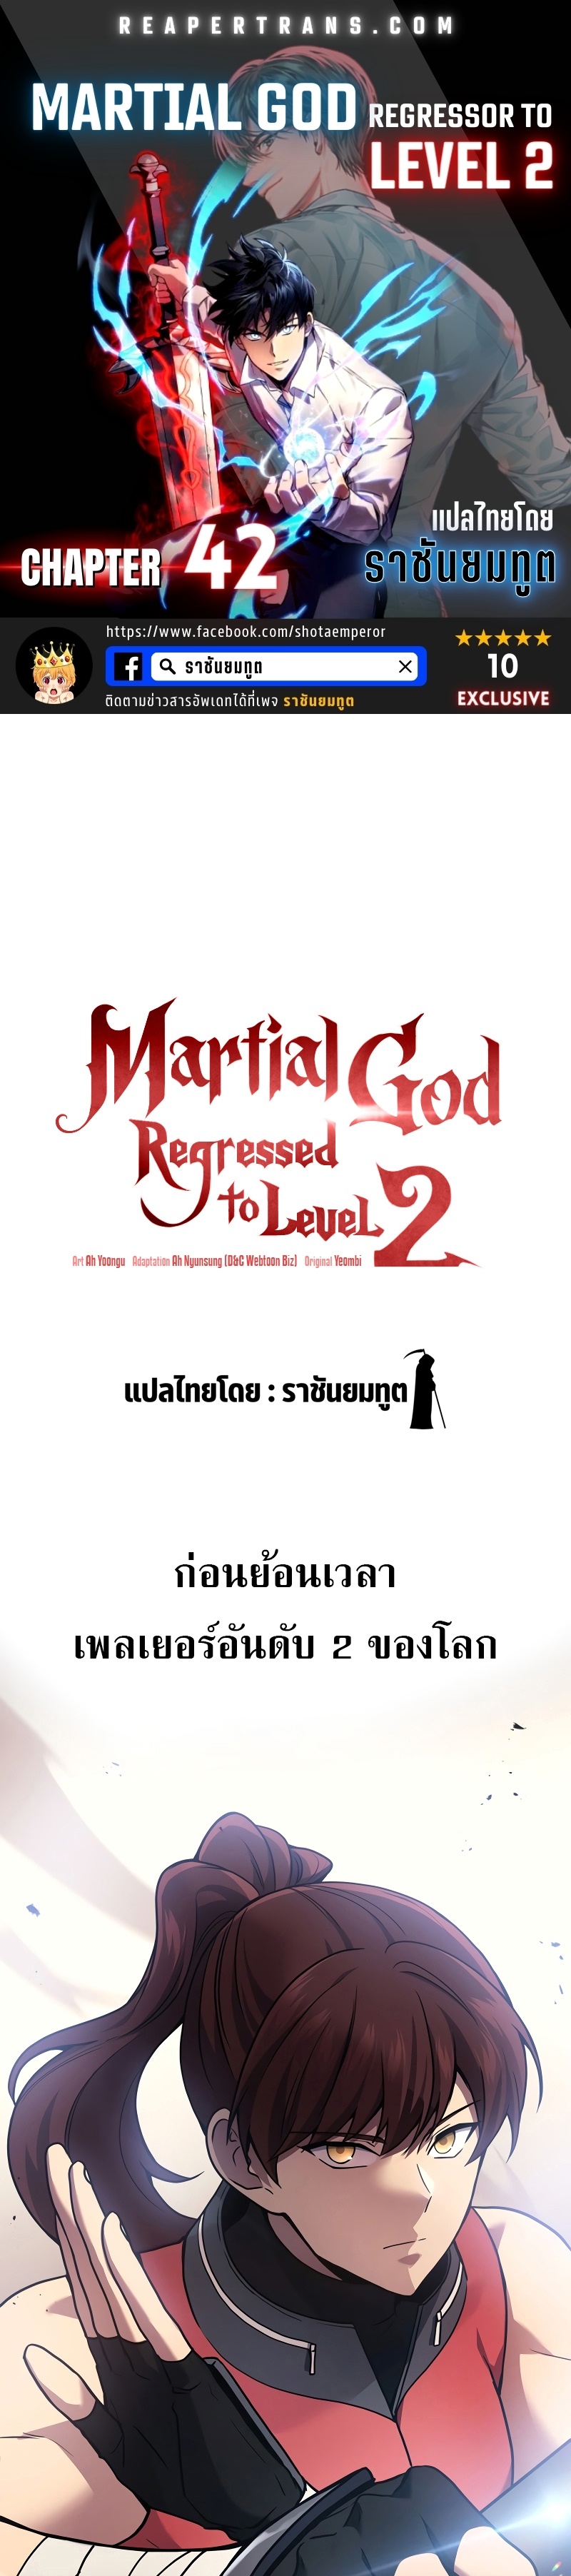 martial god regressor to level 2 42.01